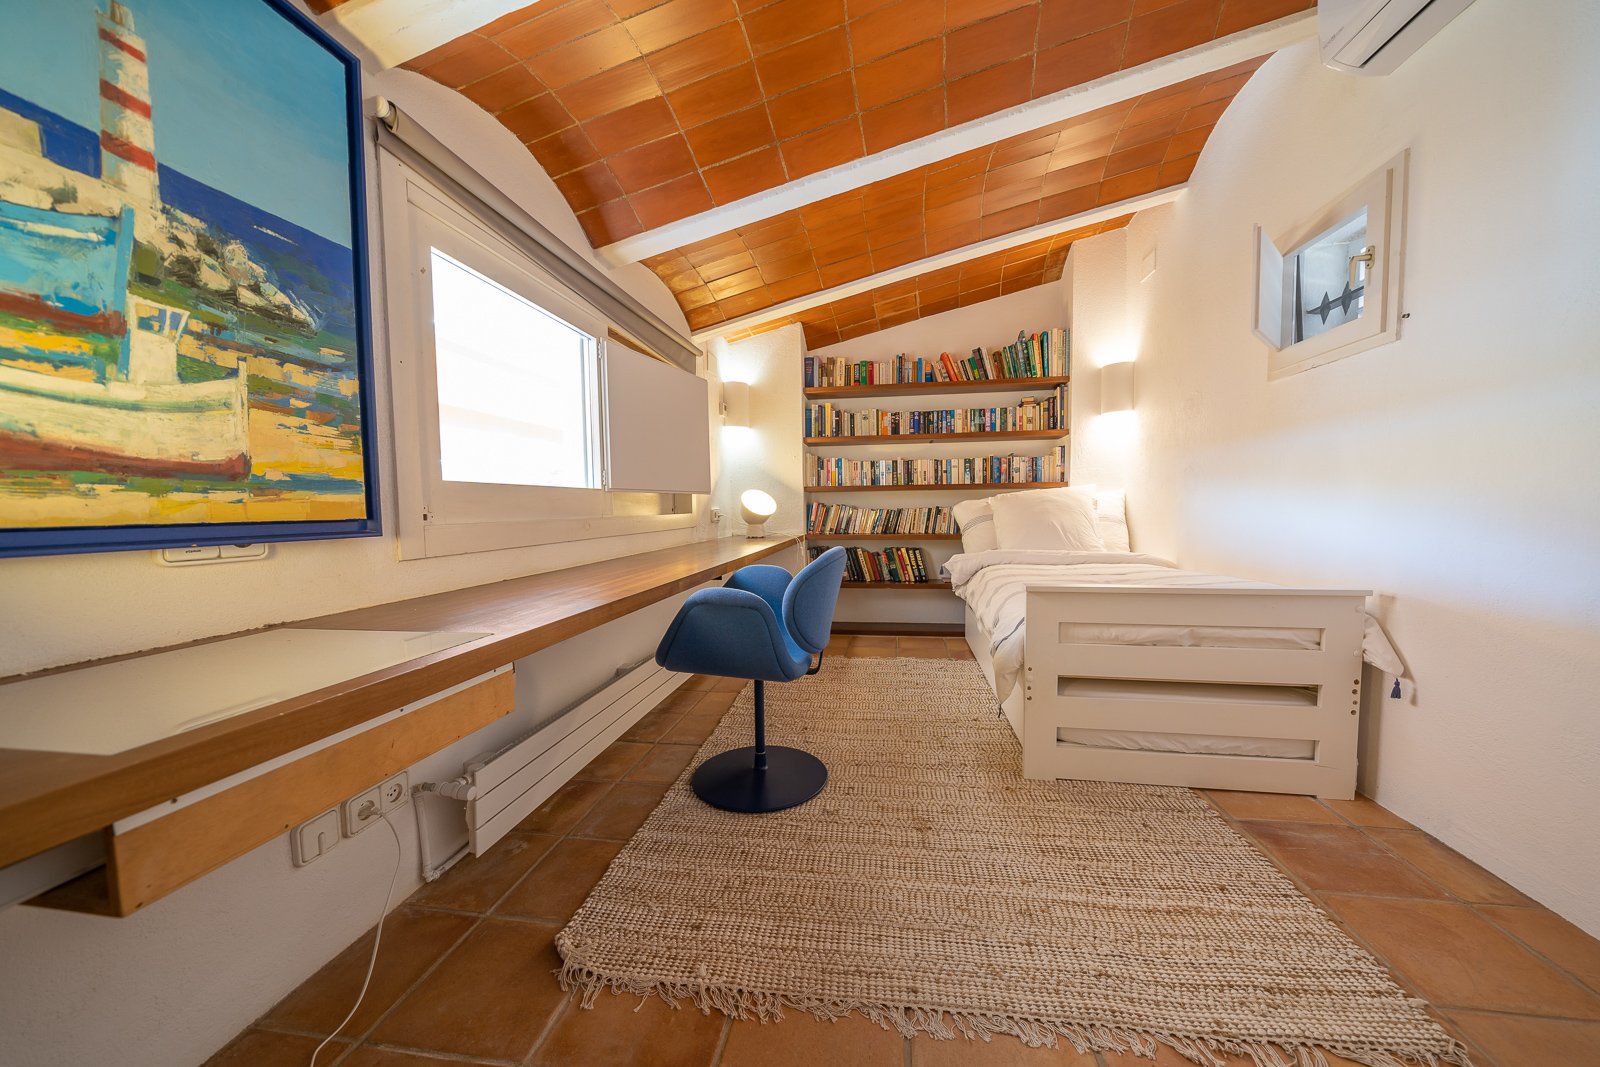 Luxury vacation villa in Cadaqués, Spain - bedroom 